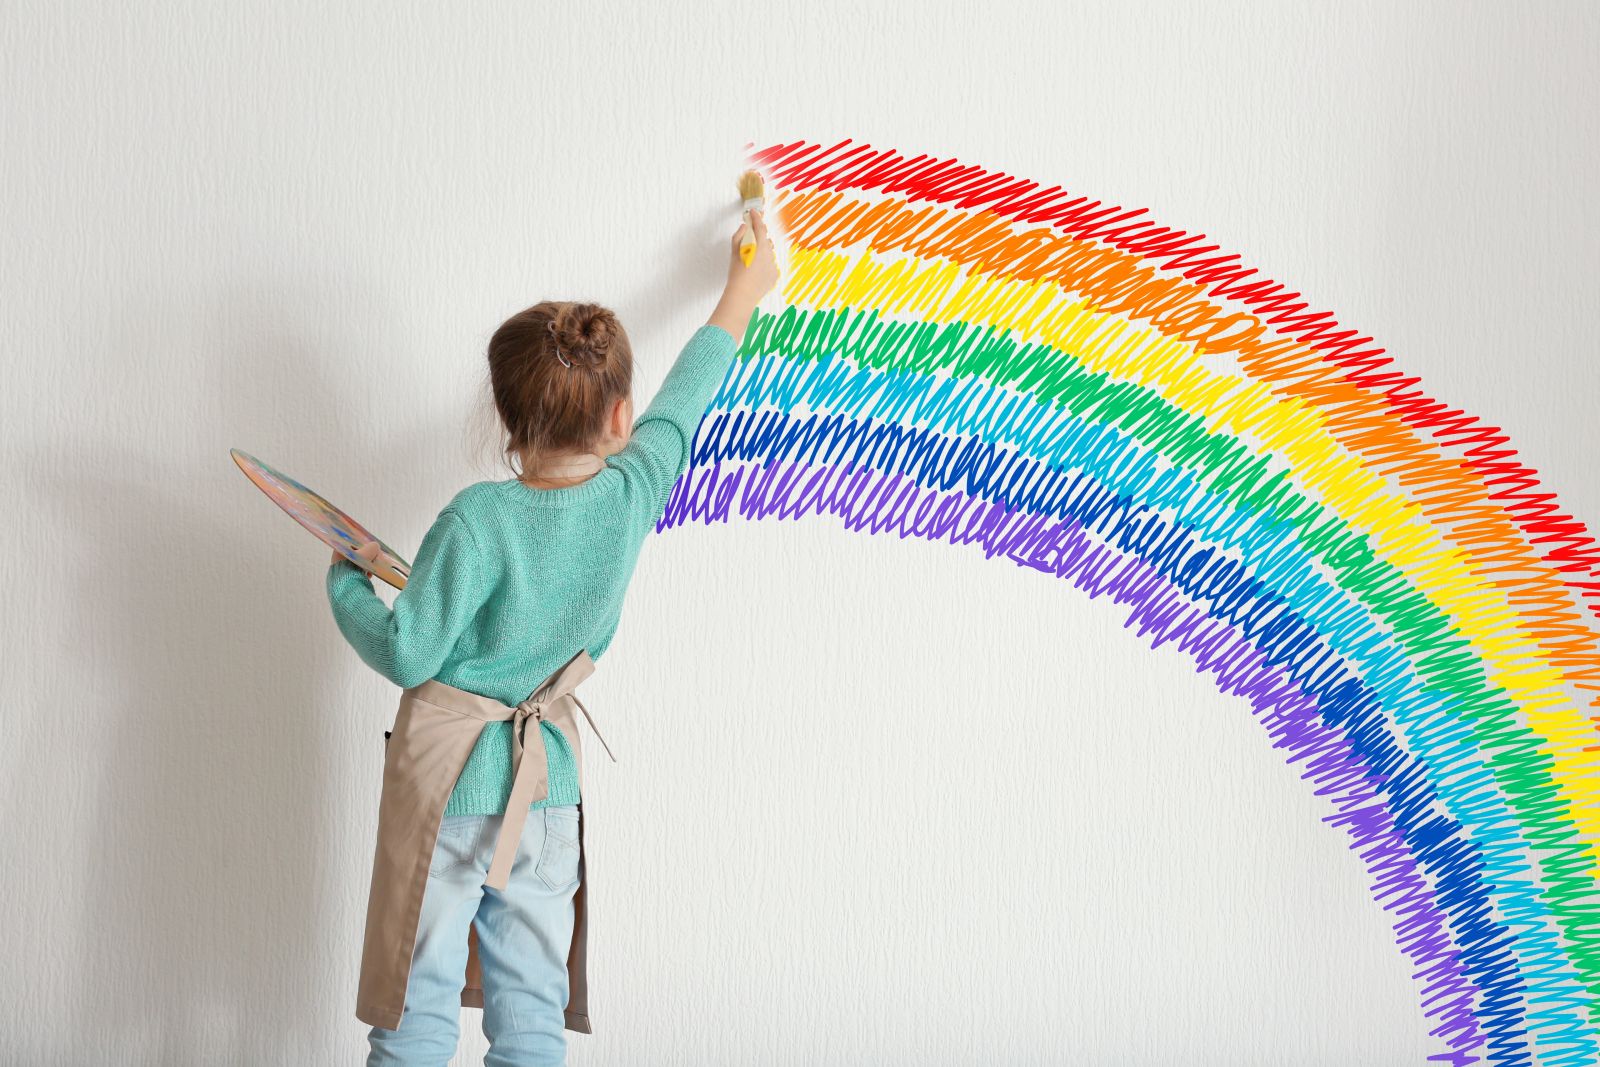 A festés pozitívan befolyásolhatja az autizmussal élő gyerekek hangulatát